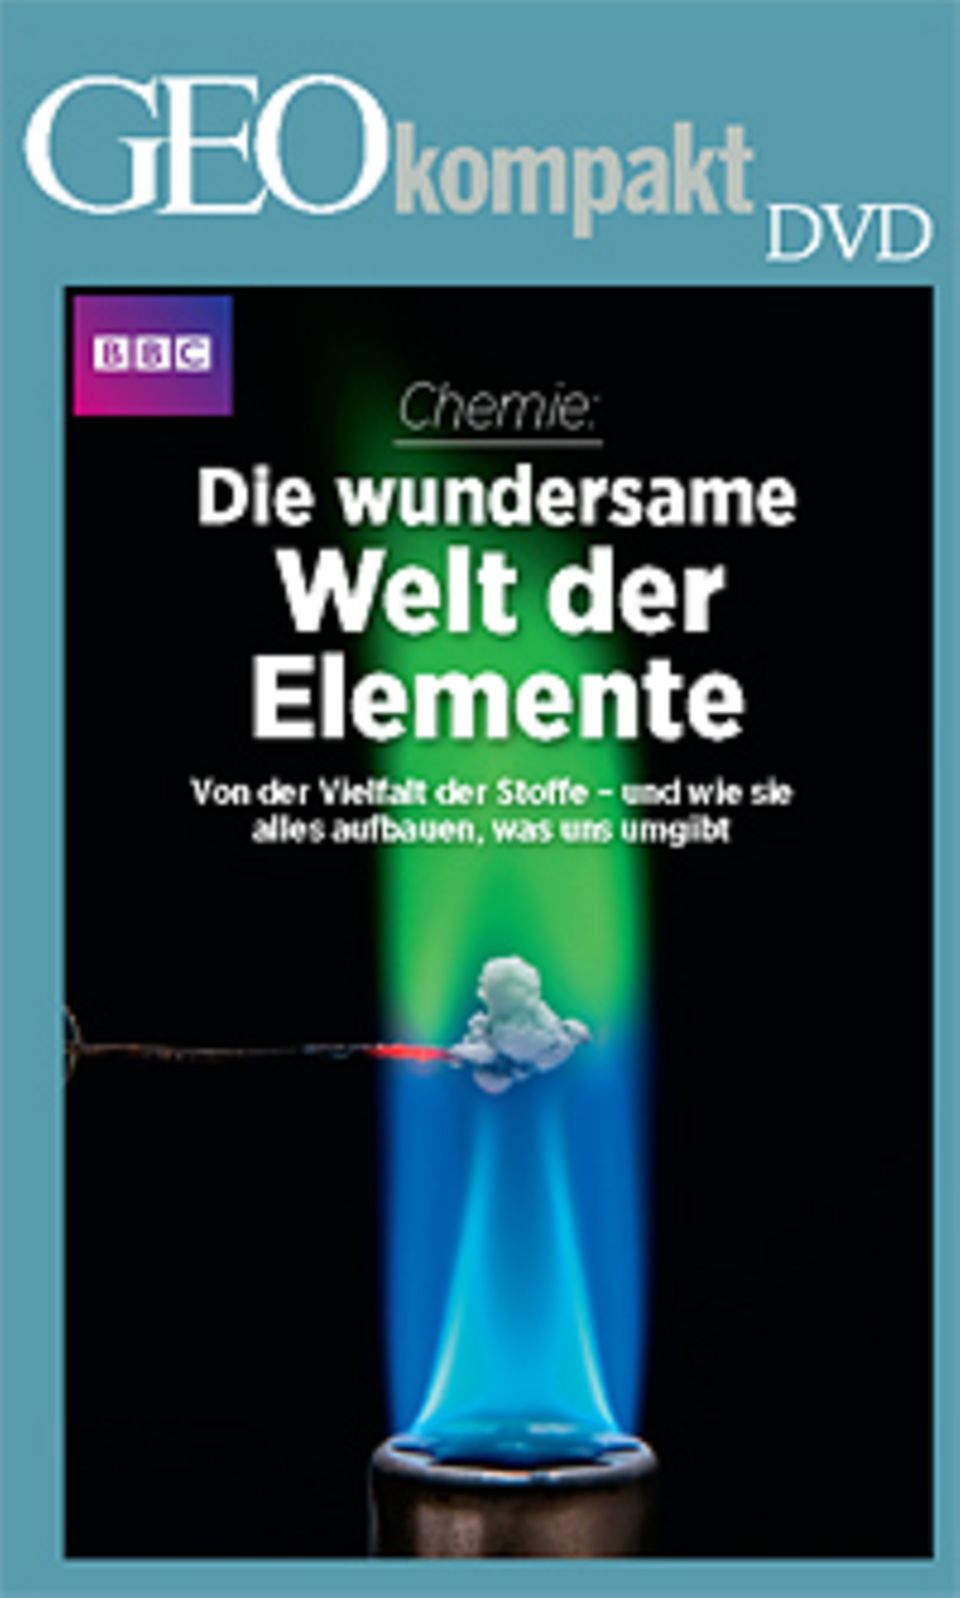 GEOkompakt Nr. 31 "Wie uns Chemie die Welt erklärt" ist auch mit DVD erhältlich